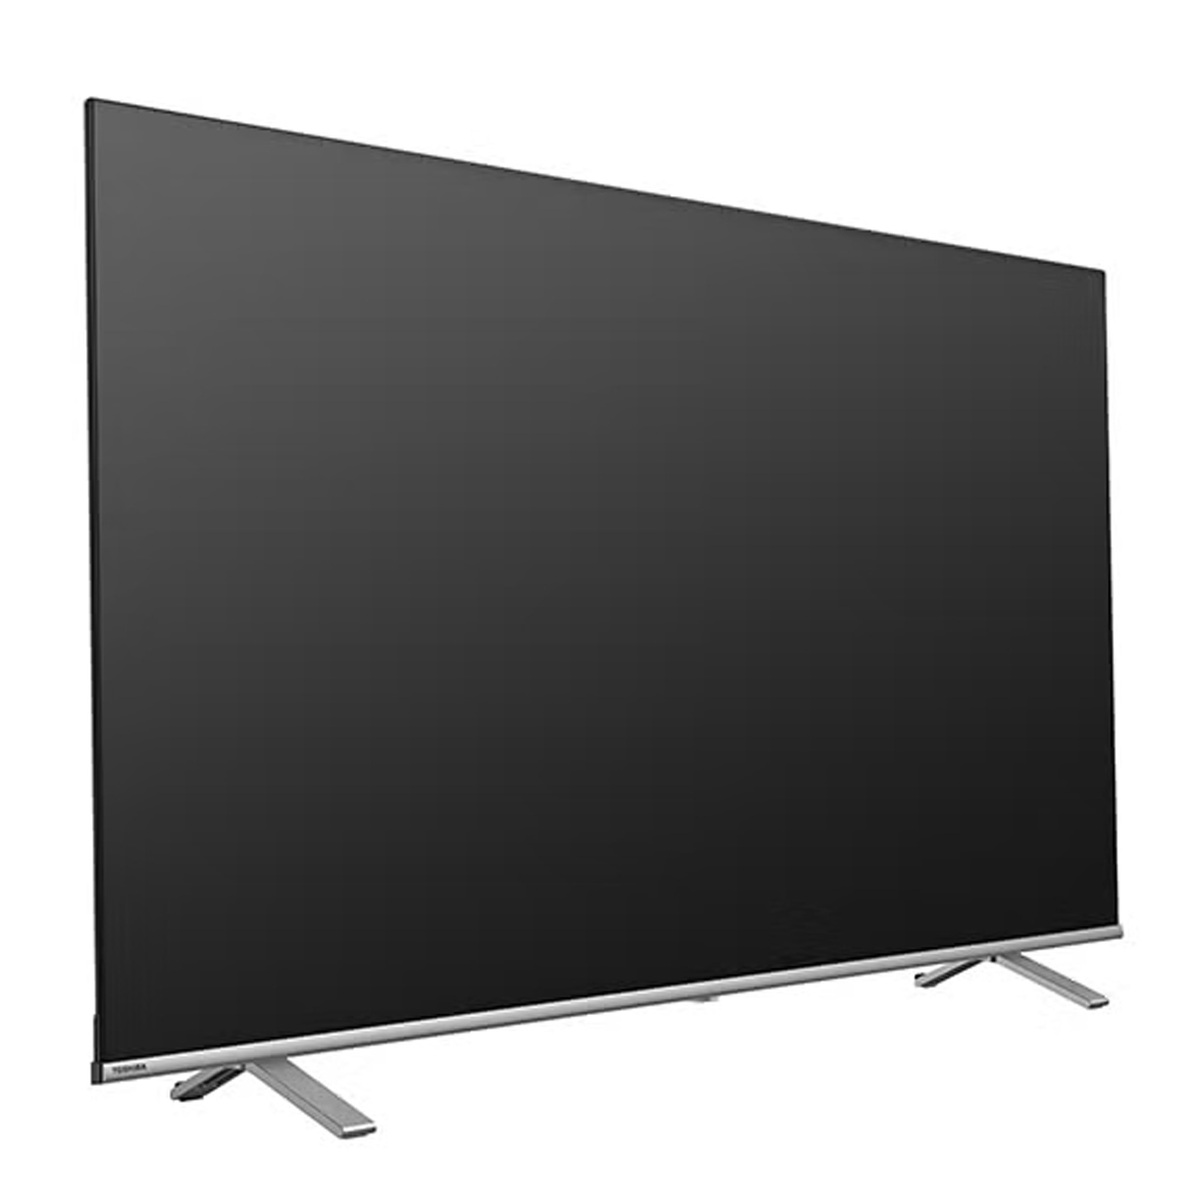 توشيبا تلفزيون ذكي 65 بوصة 4K إل إي دي، أسود، 65C350LW